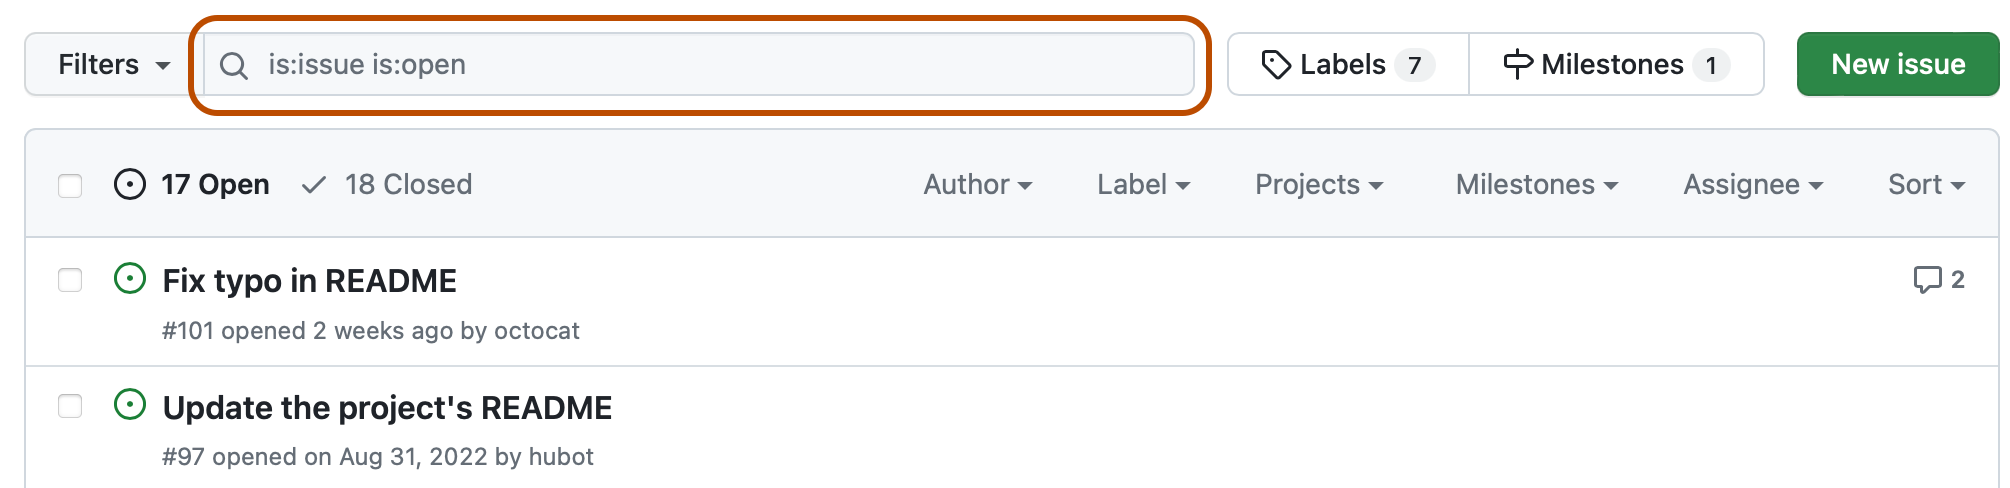 Снимок экрана: список проблем для репозитория. Над списком поле поиска, содержащее запрос "is:issue is:open", описывается в темно-оранжевый цвет.